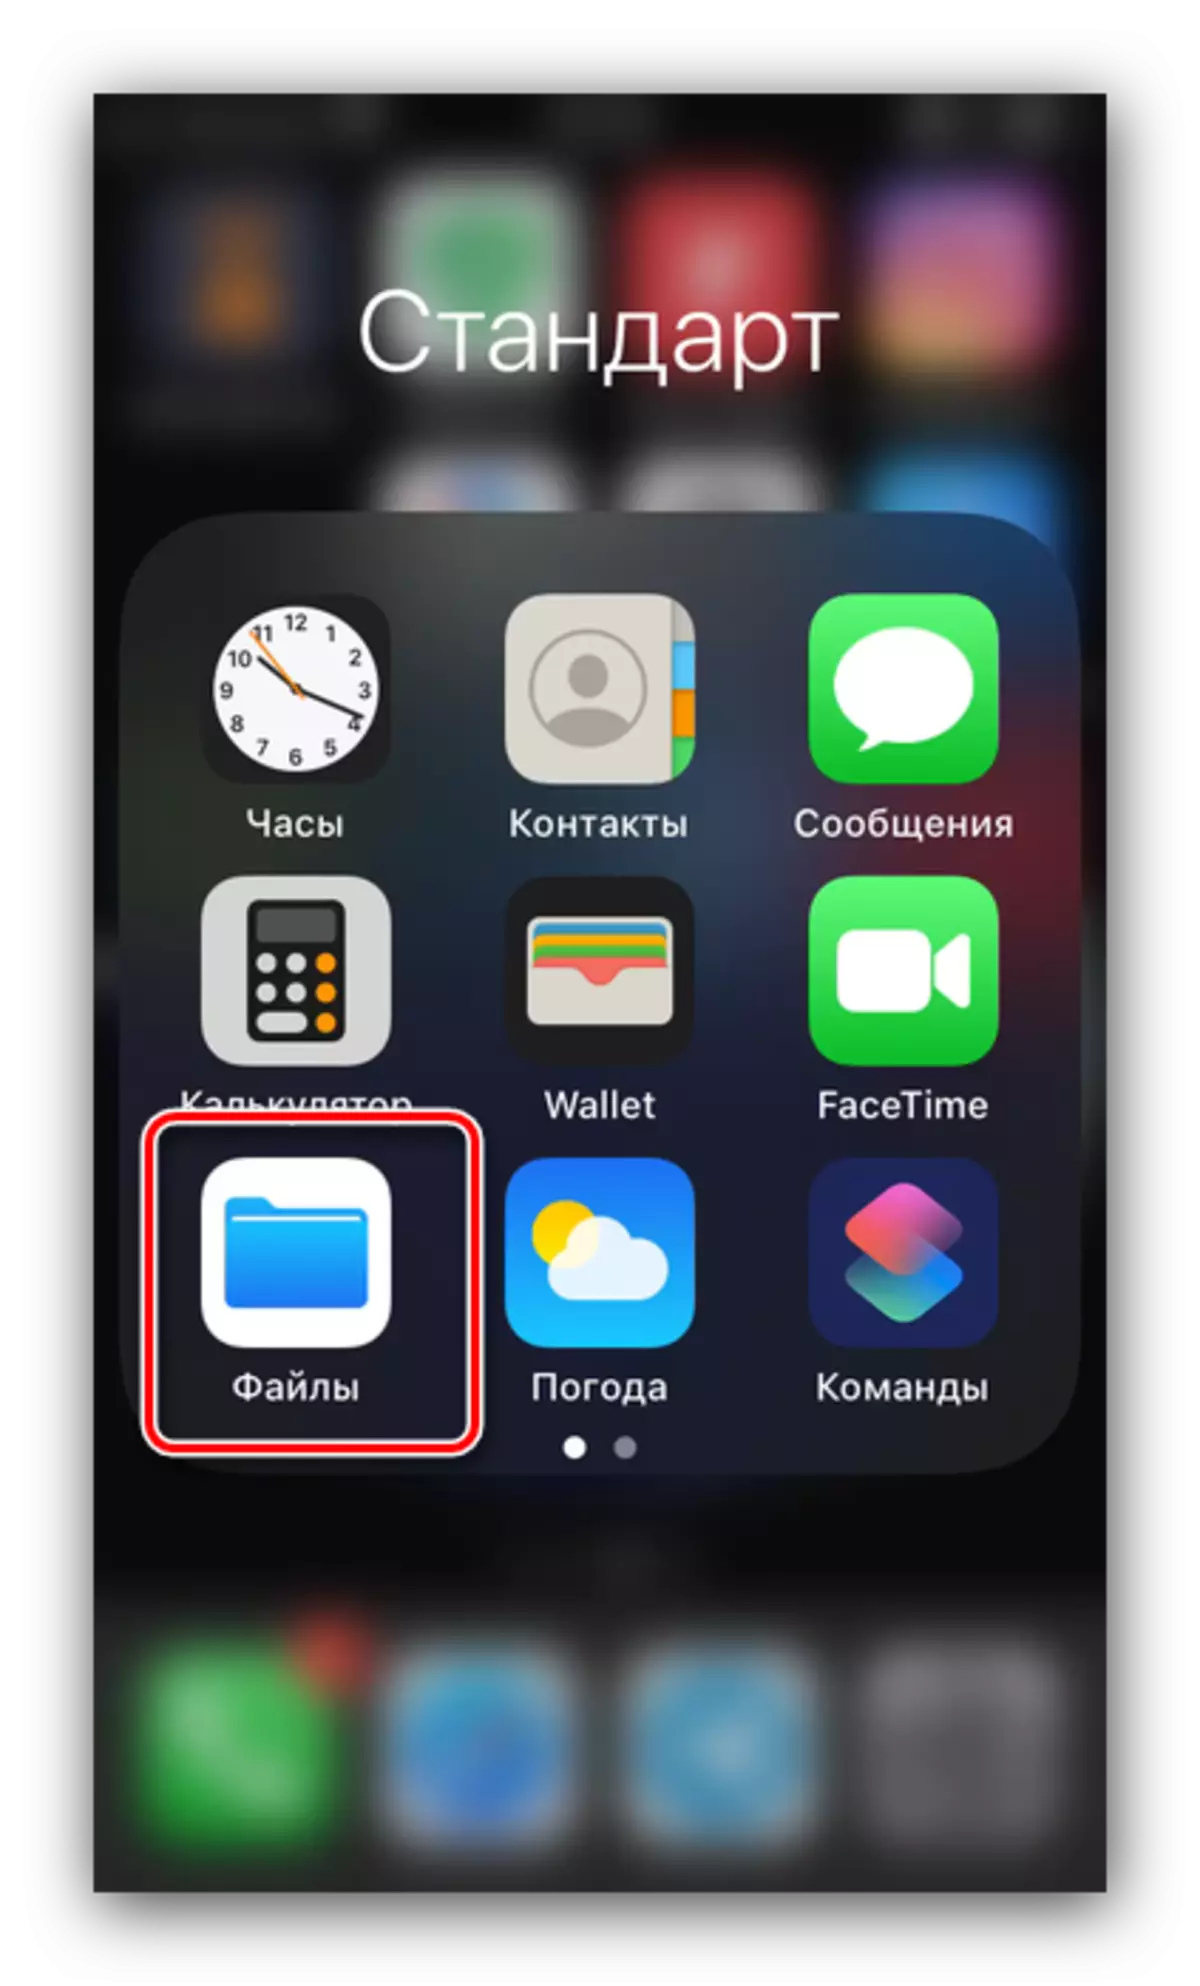 Ouvrez le gestionnaire pour déplacer des photos d'un lecteur flash sur le téléphone iOS via OTG